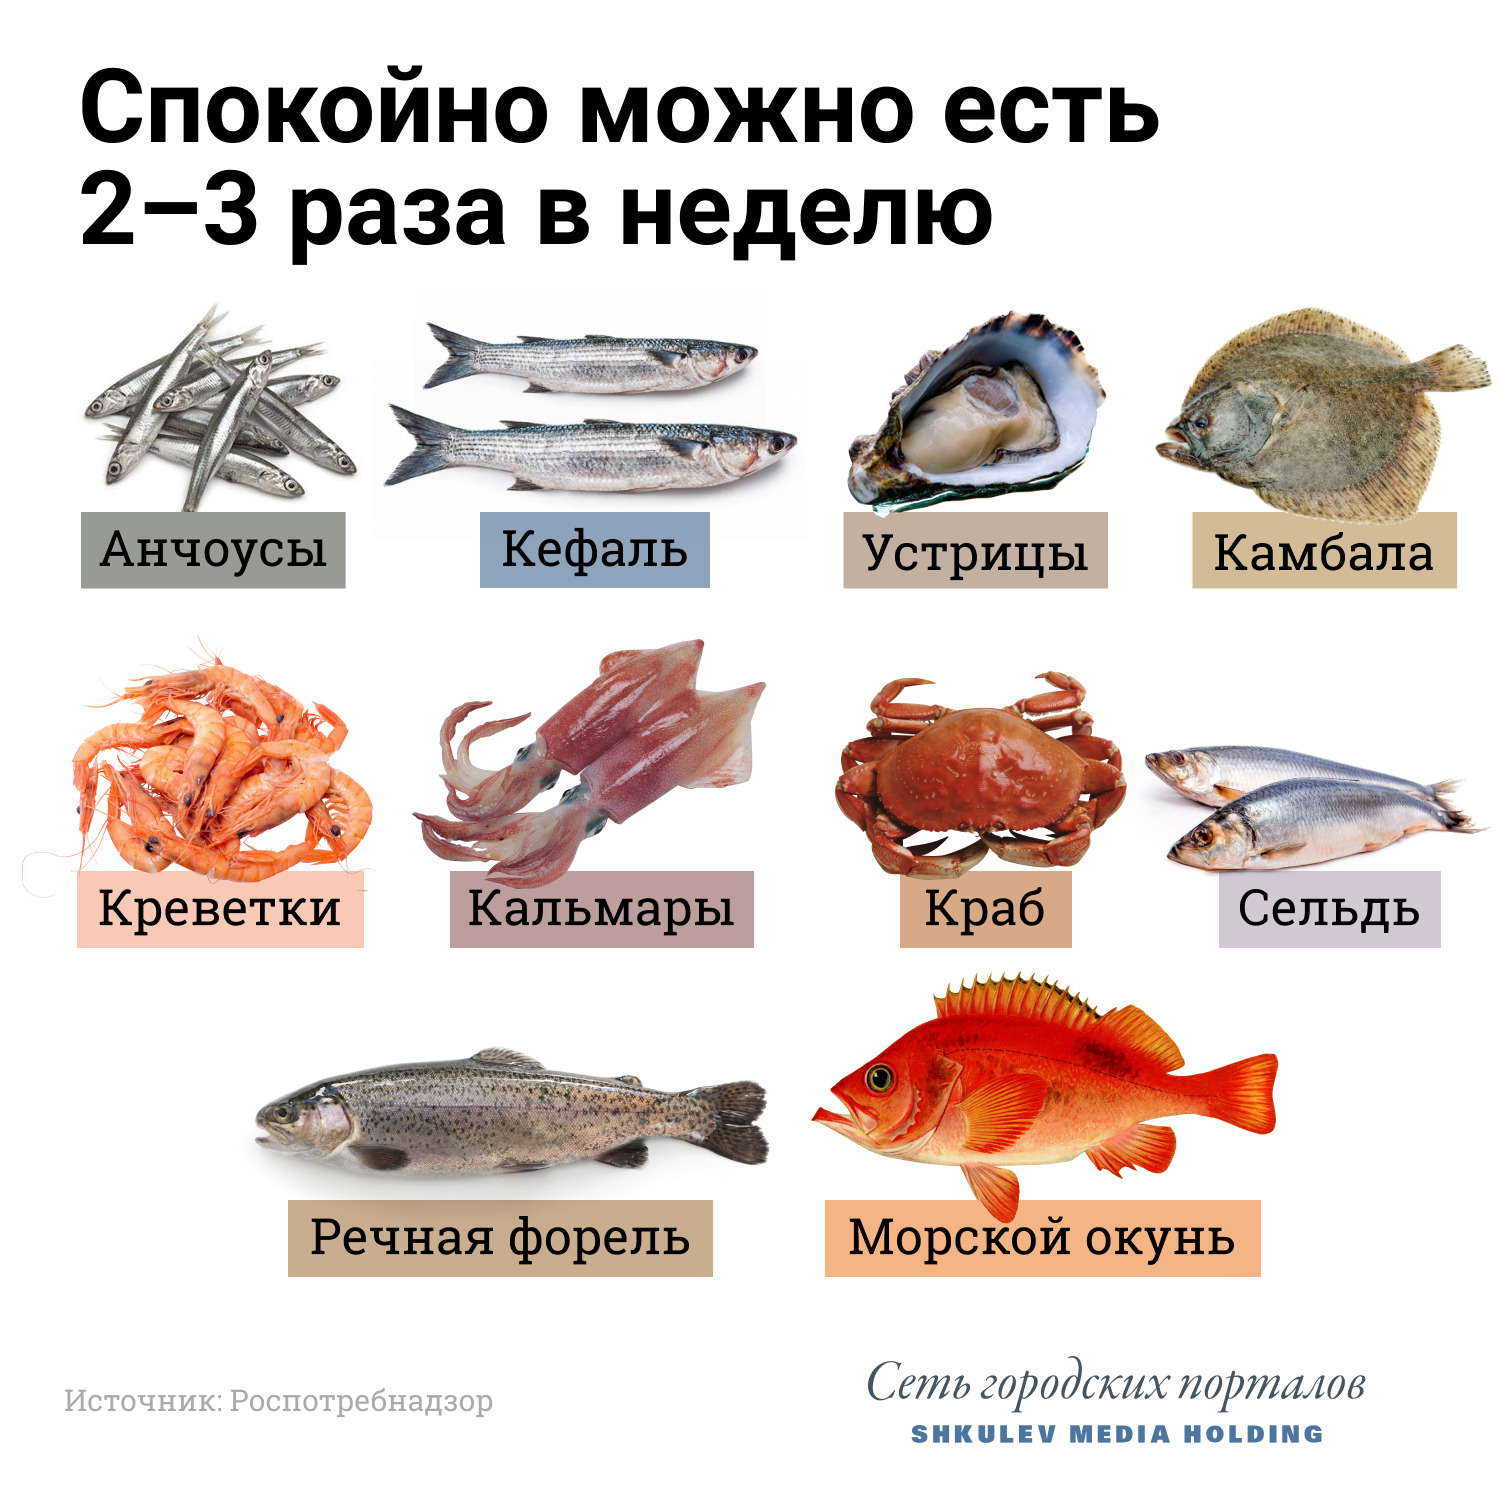 нежирные сорта красной рыбы